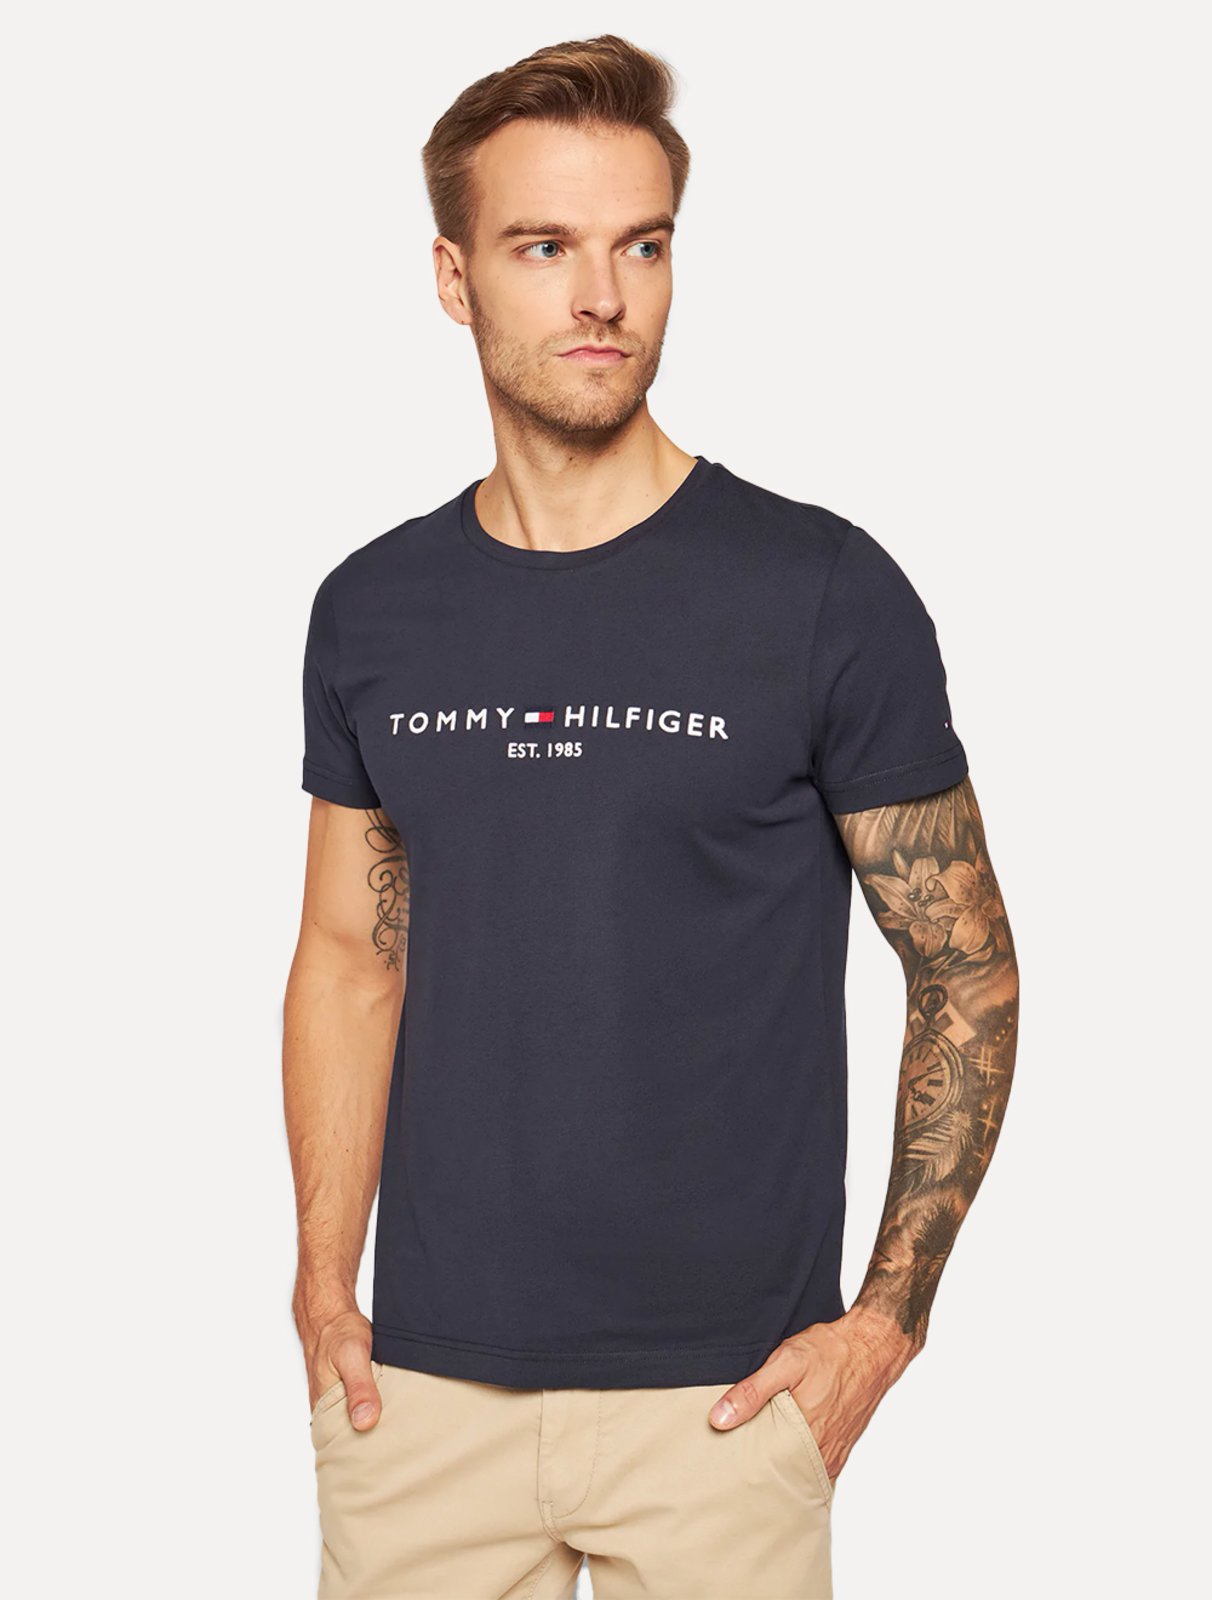 Camisa Tommy Hilfiger For Men